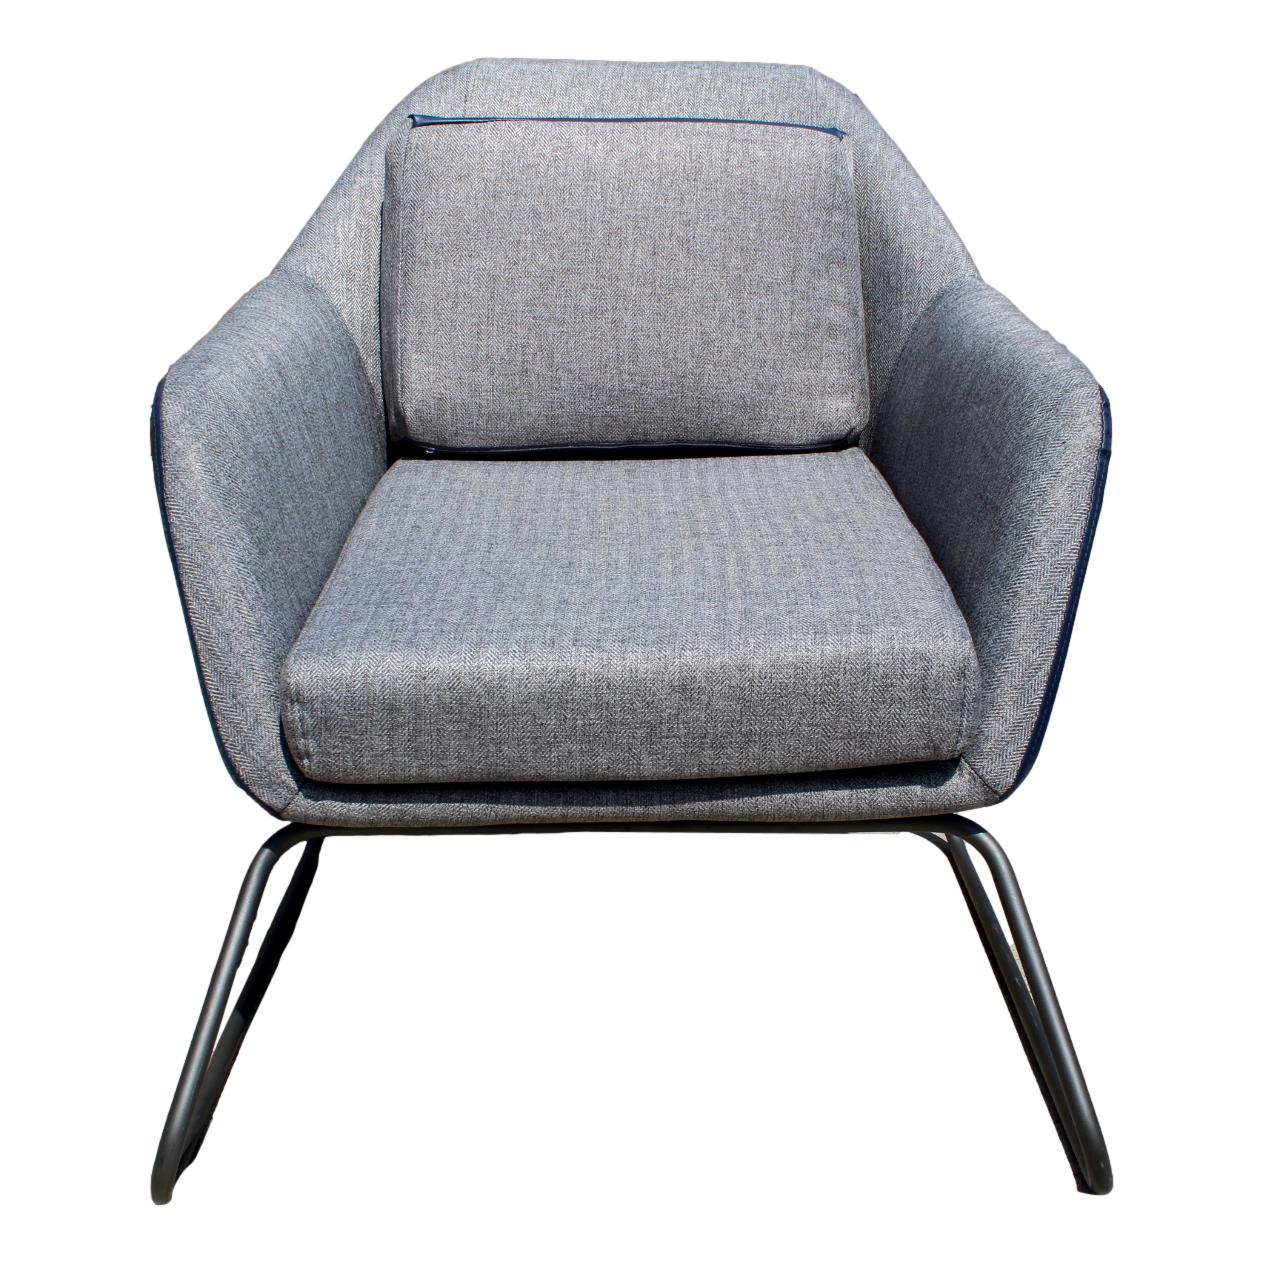 Gray/Blue Arm Chair